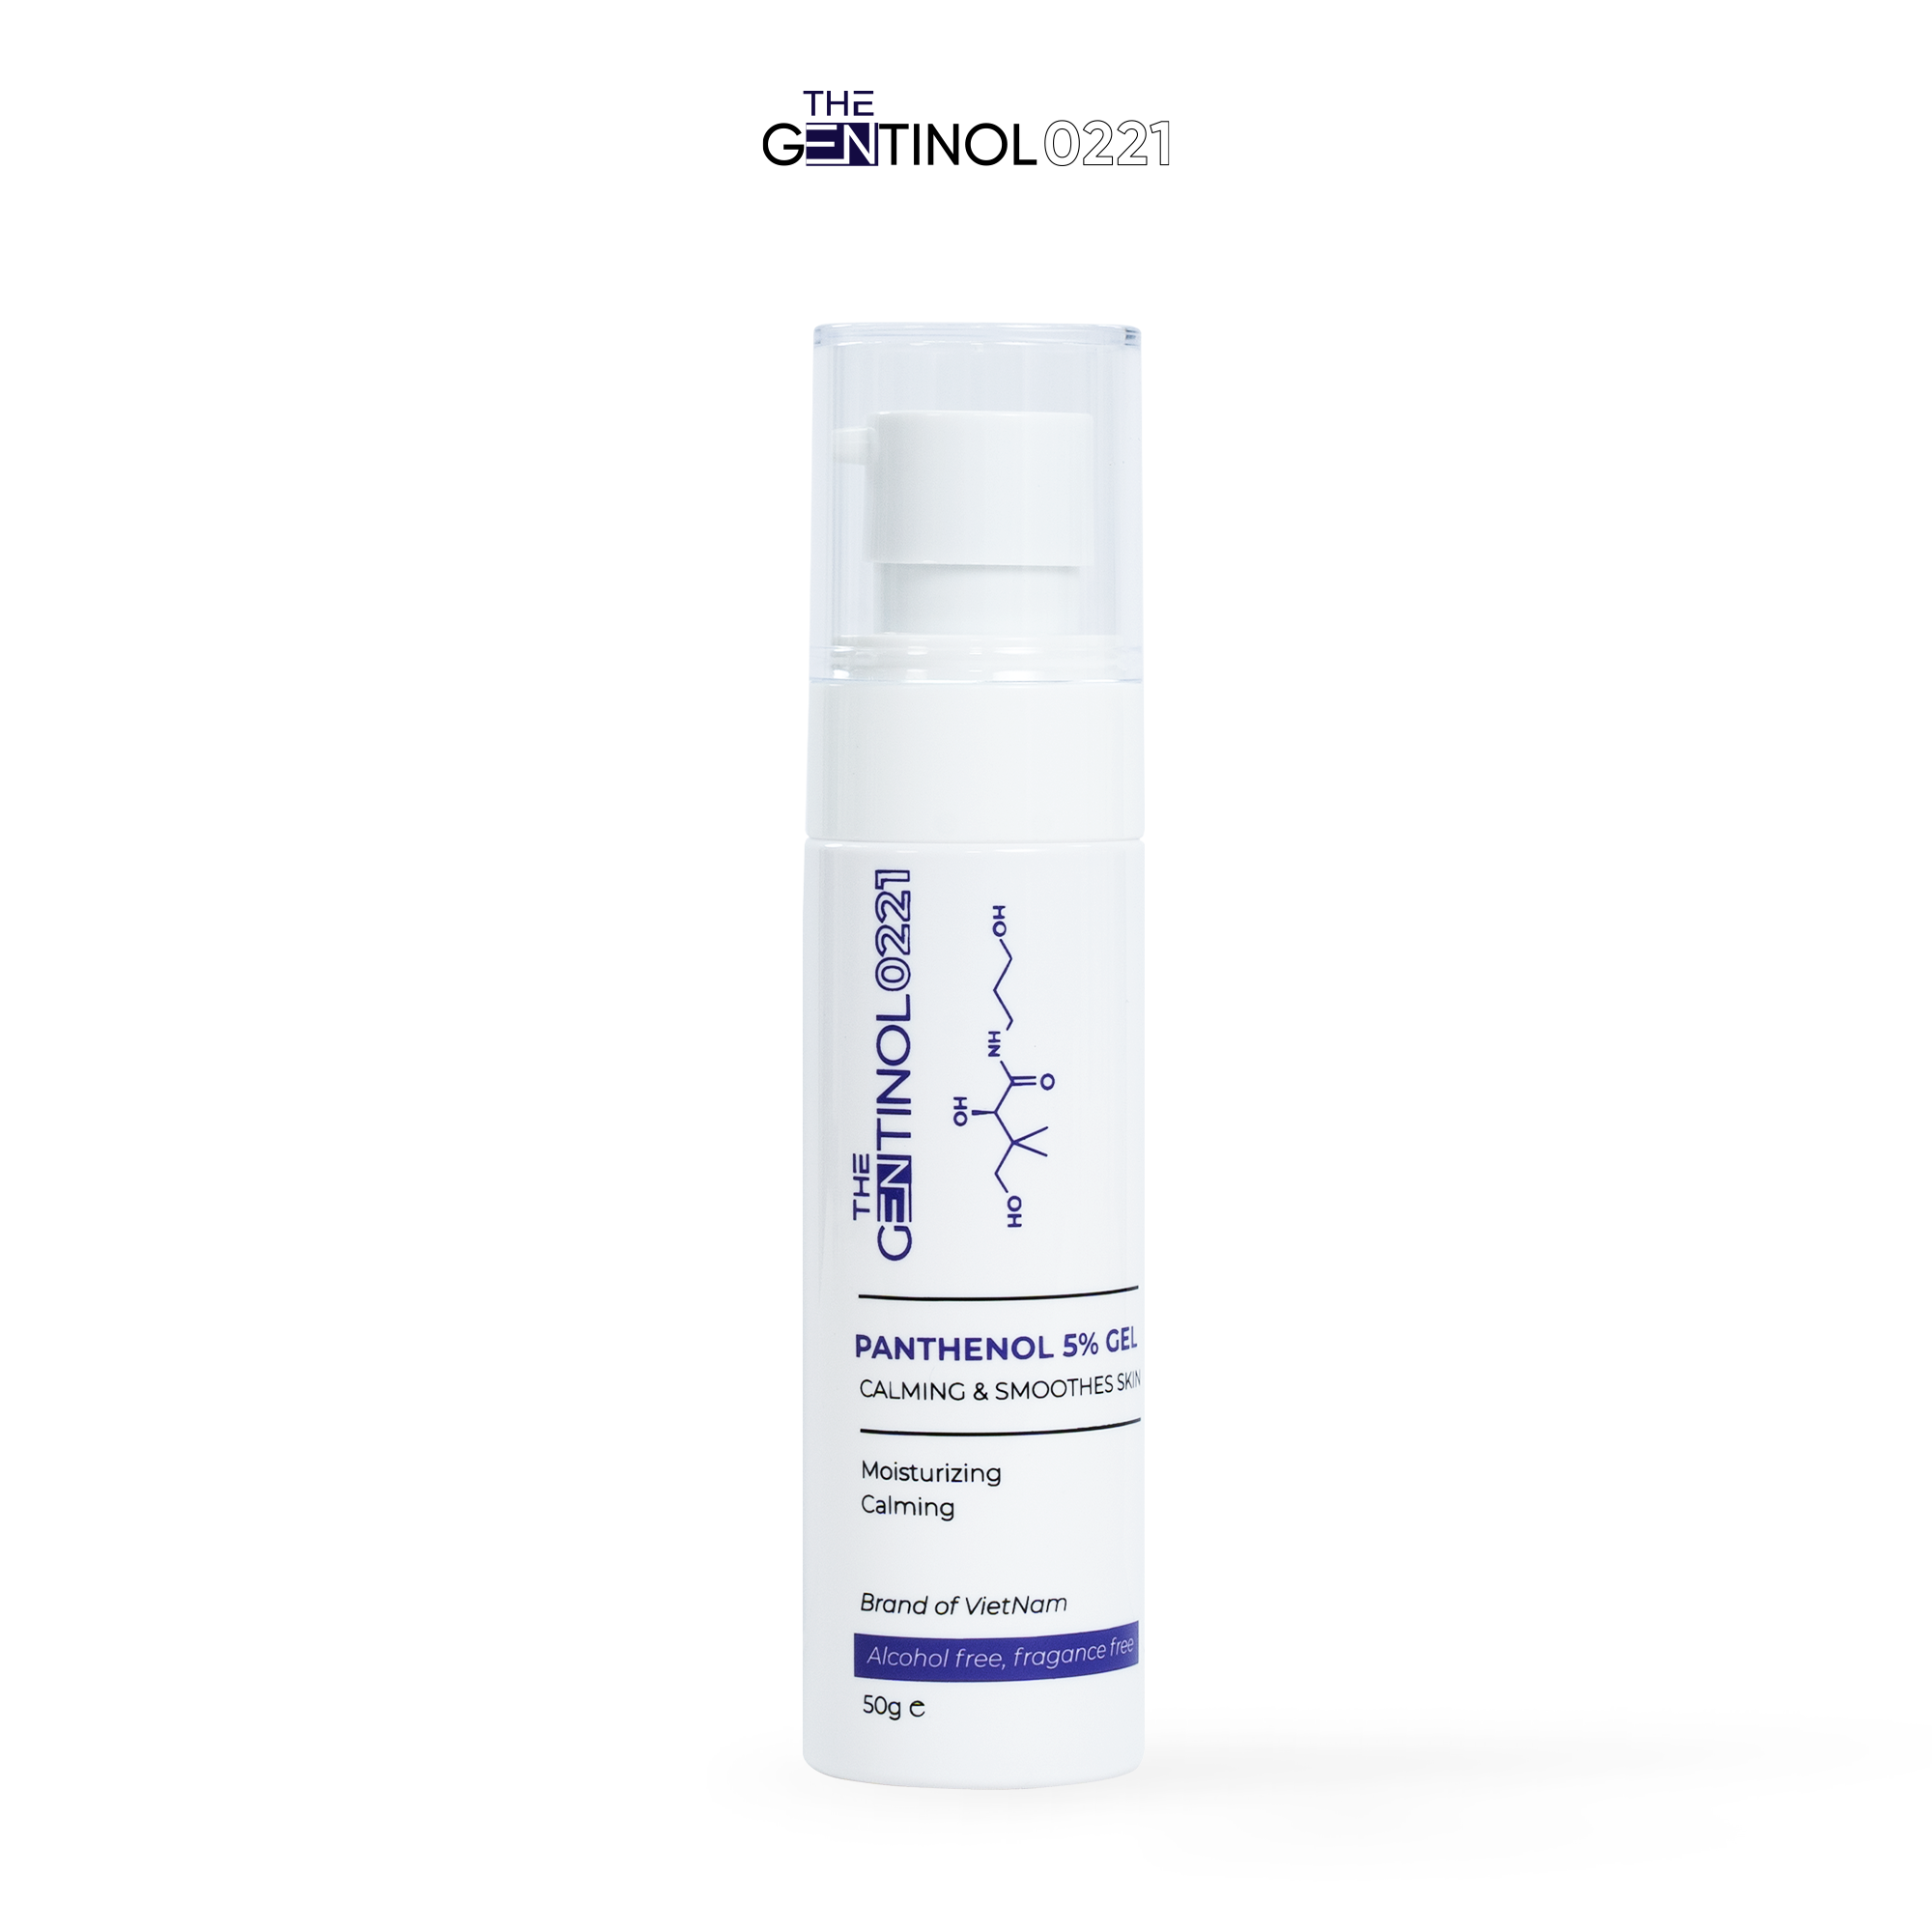 Kem hoạt chất phục hồi Panthenol 5% The Gentinol 0221 giúp làm dịu da, cải thiện nám, dưỡng ẩm làn da mịn màn và trắng sáng 50g